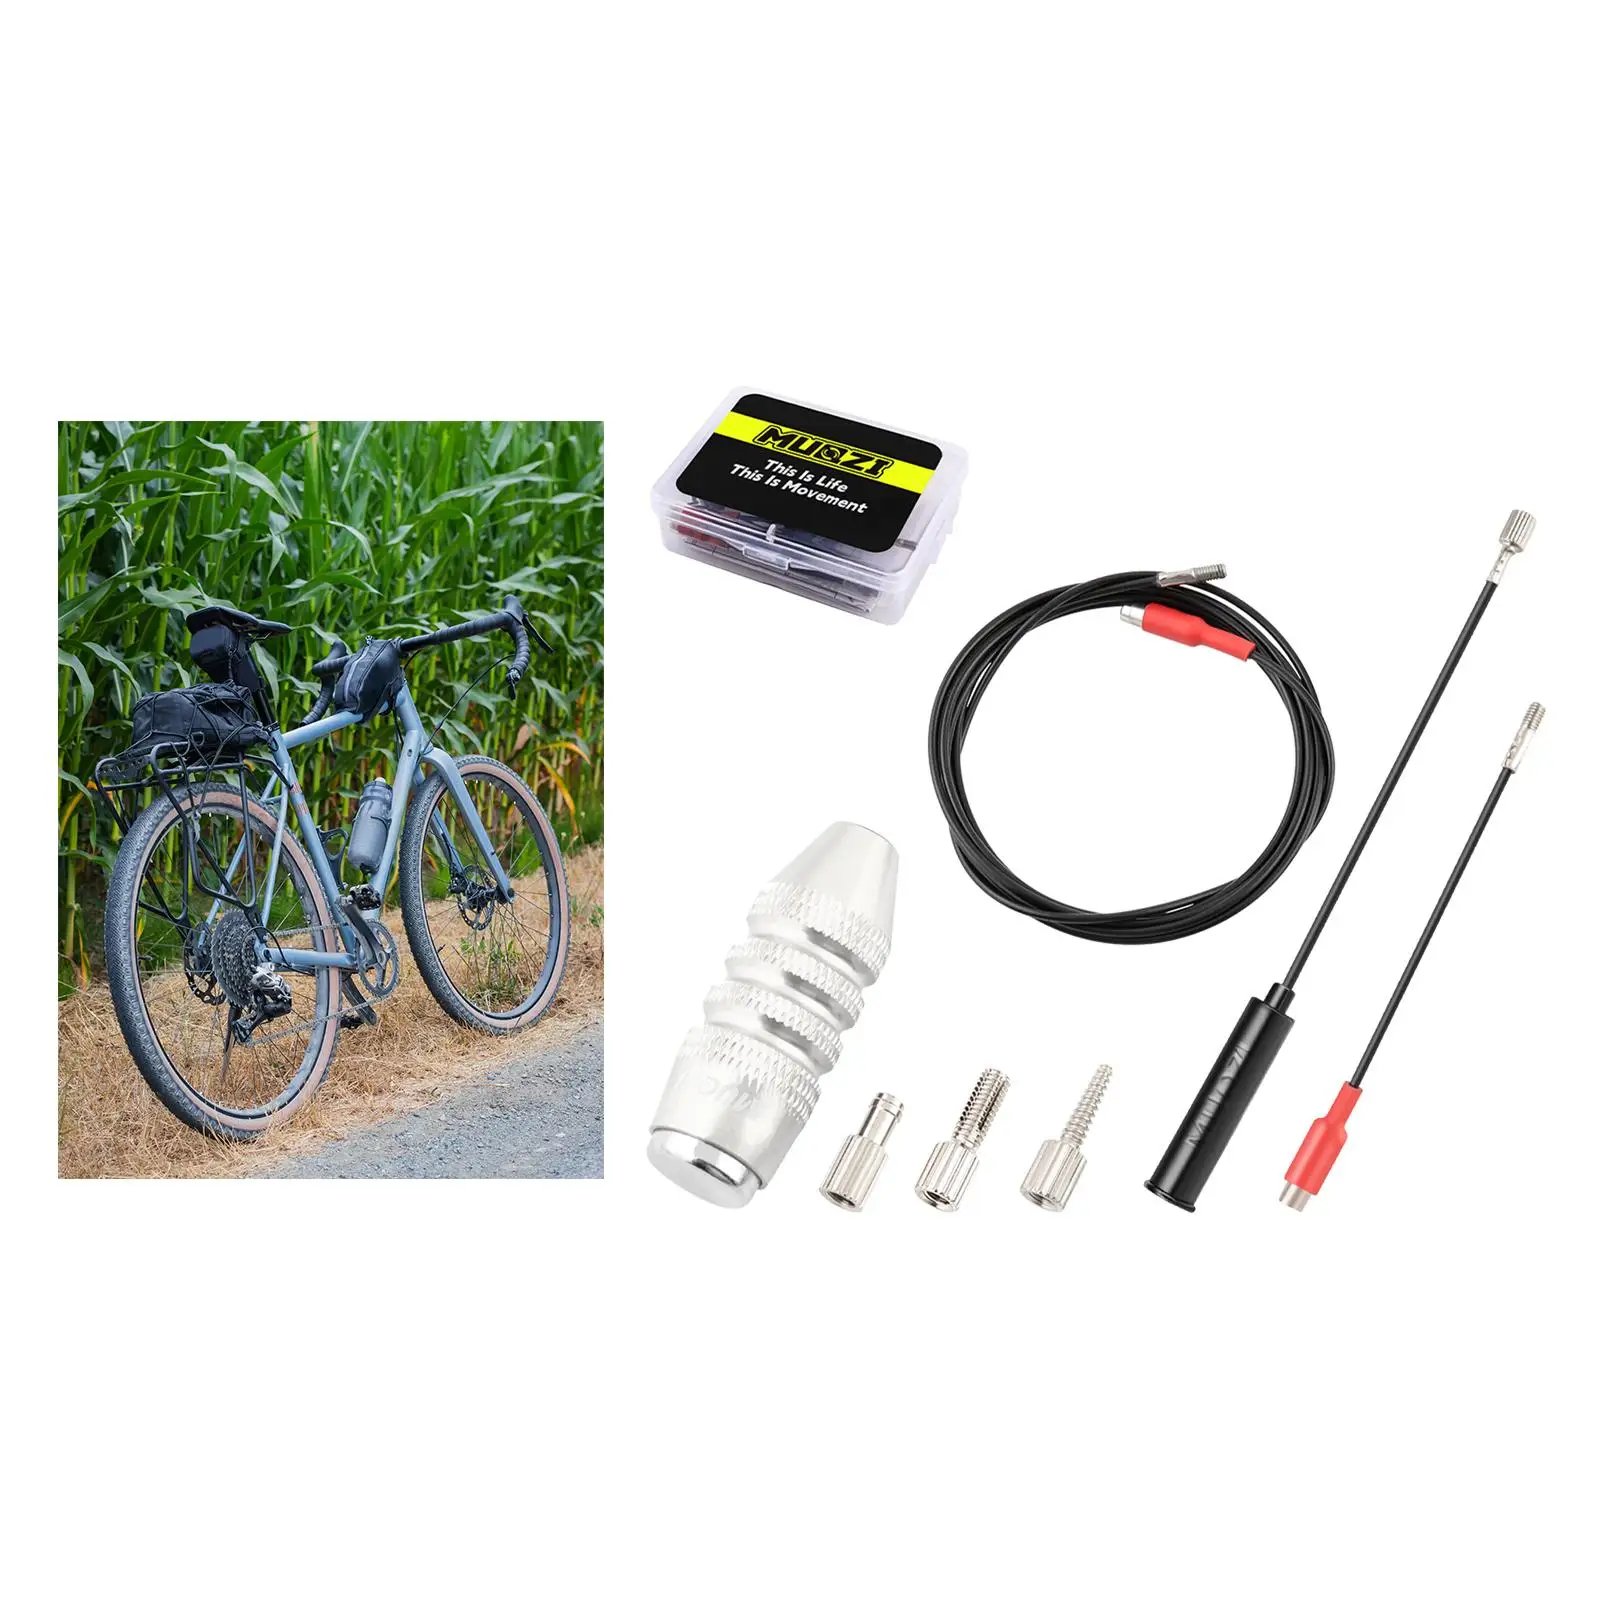 Набор инструментов для прокладки внутреннего кабеля велосипеда BMX, алюминиевые наборы для прокладки внутреннего кабеля, велосипедная рама, магнит для нарезания резьбы на шланге, инструменты для ремонта